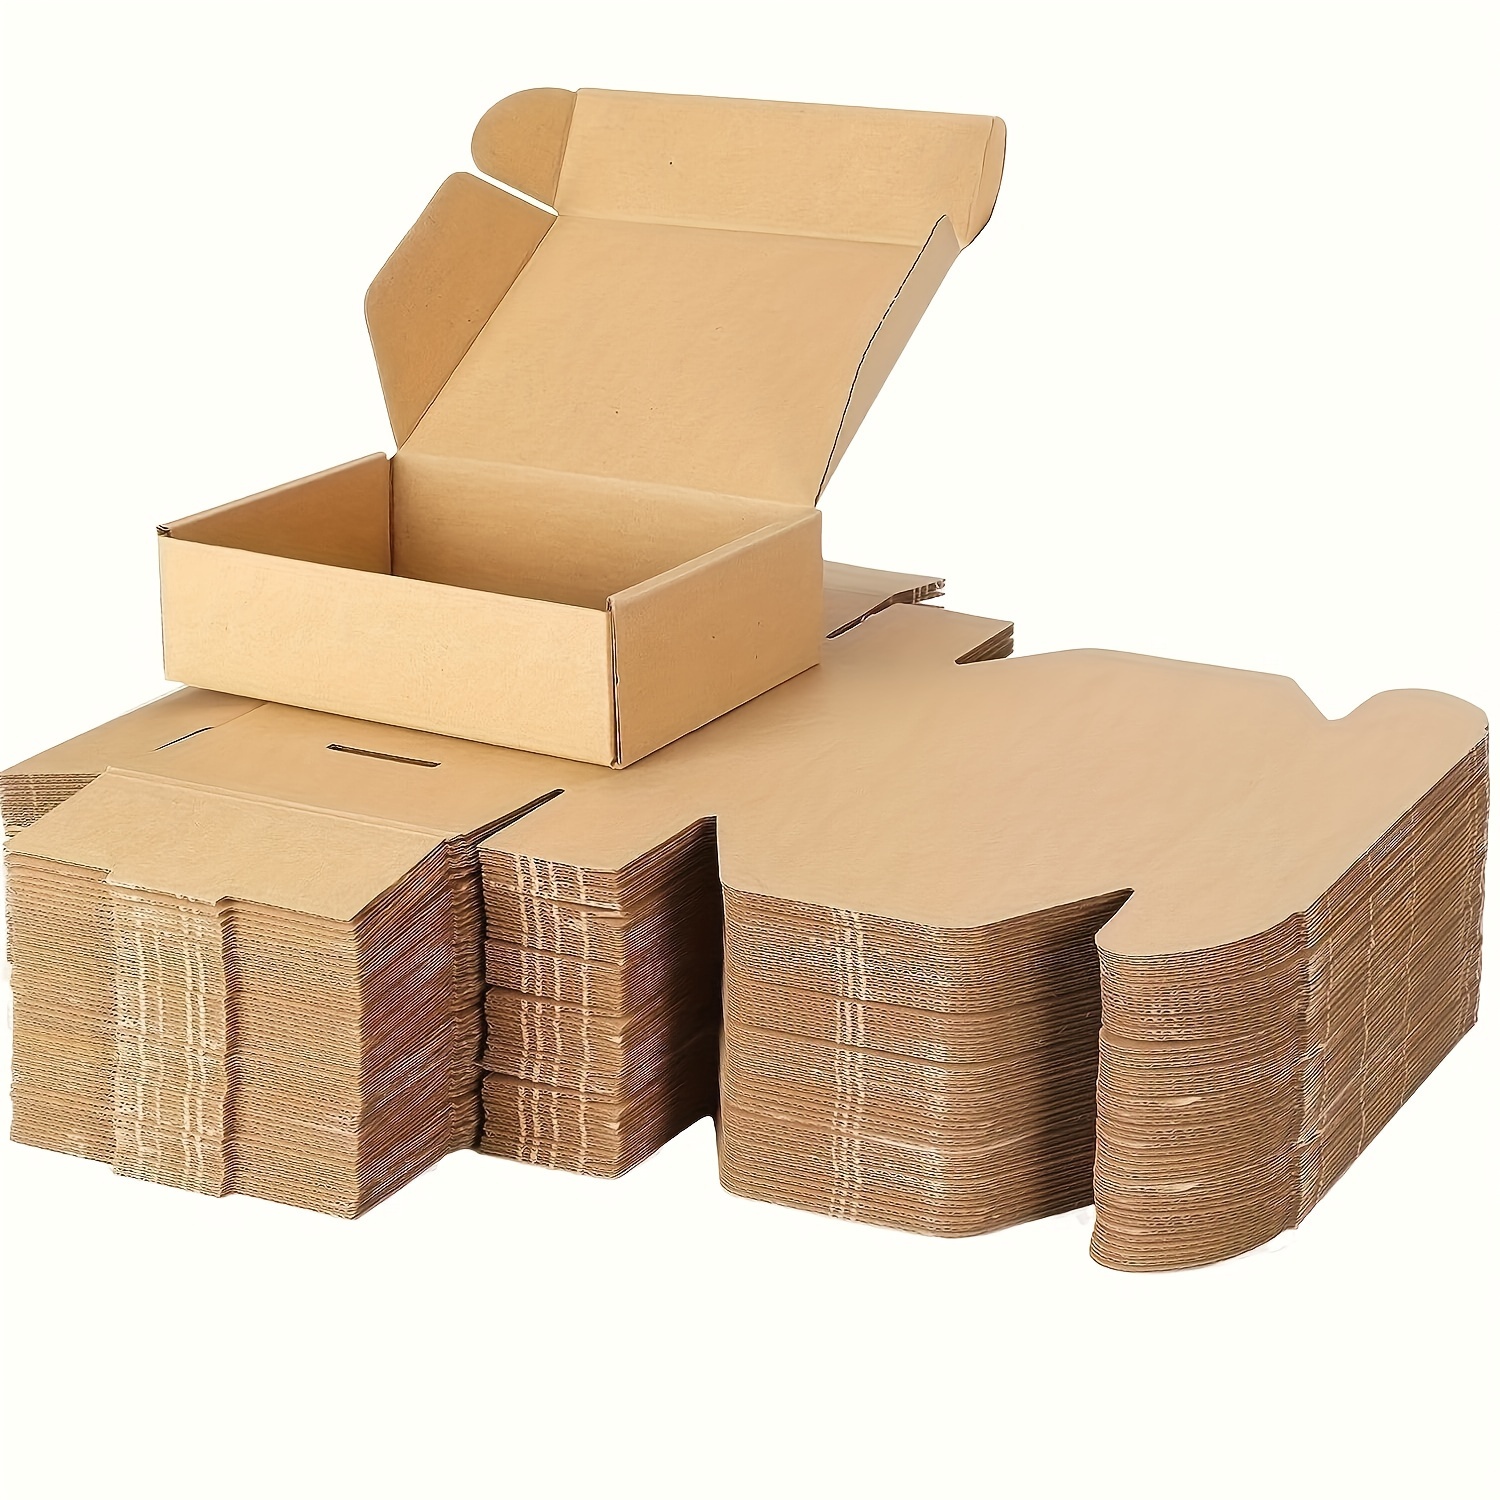 Cajas de envío negras de 12 x 9 x 4 pulgadas, paquete de 20 cajas de correo  de cartón corrugado para pequeñas empresas, suministros de embalaje de